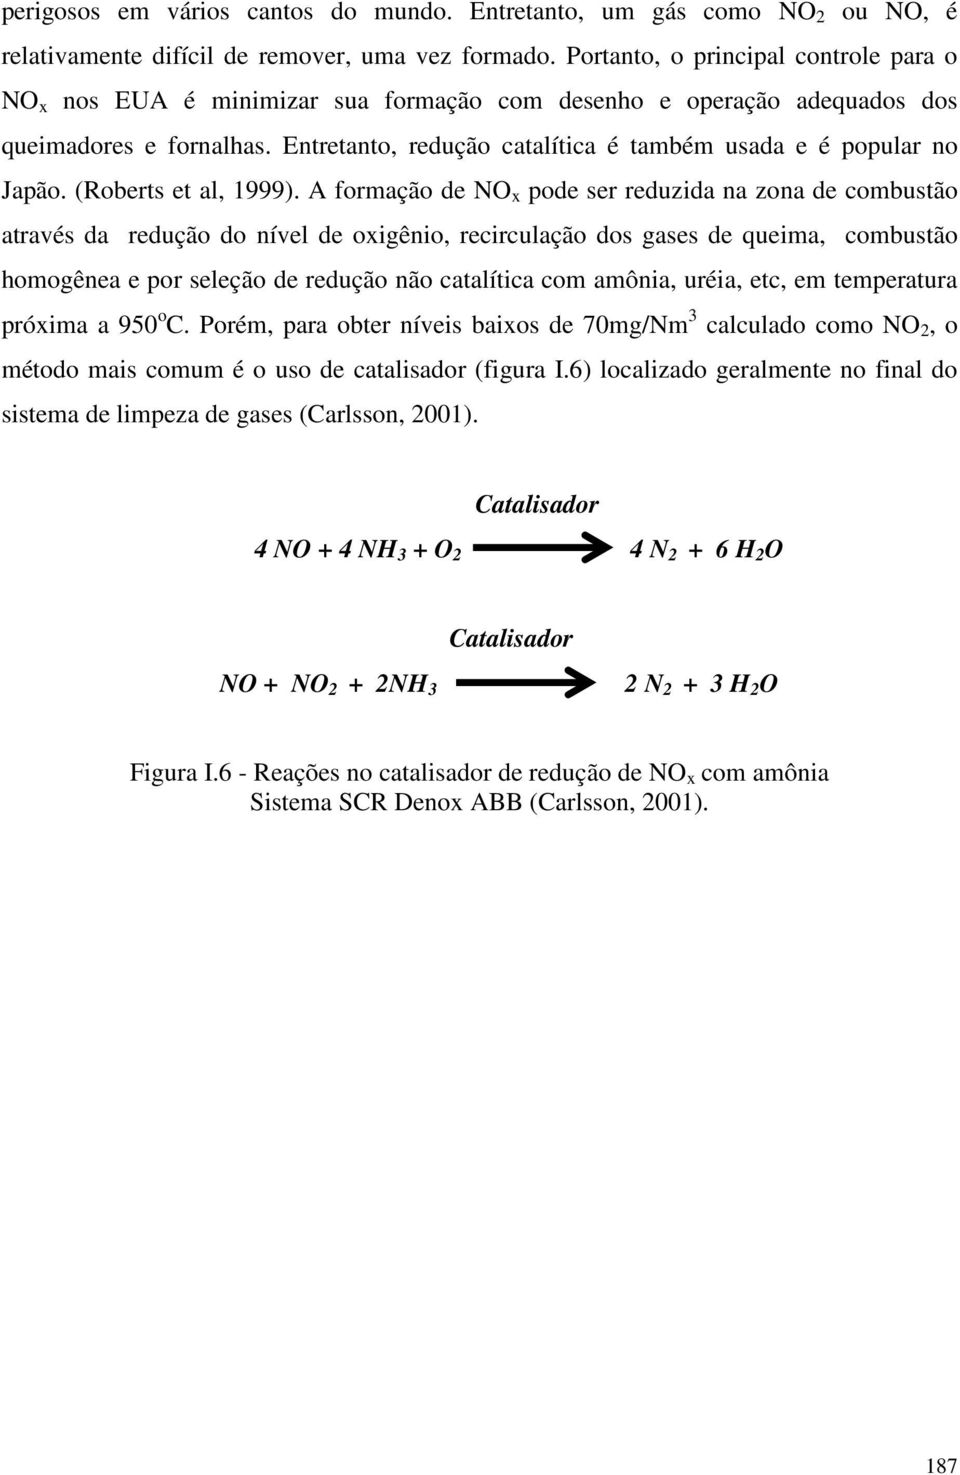 Entretanto, redução catalítica é também usada e é popular no Japão. (Roberts et al, 1999).